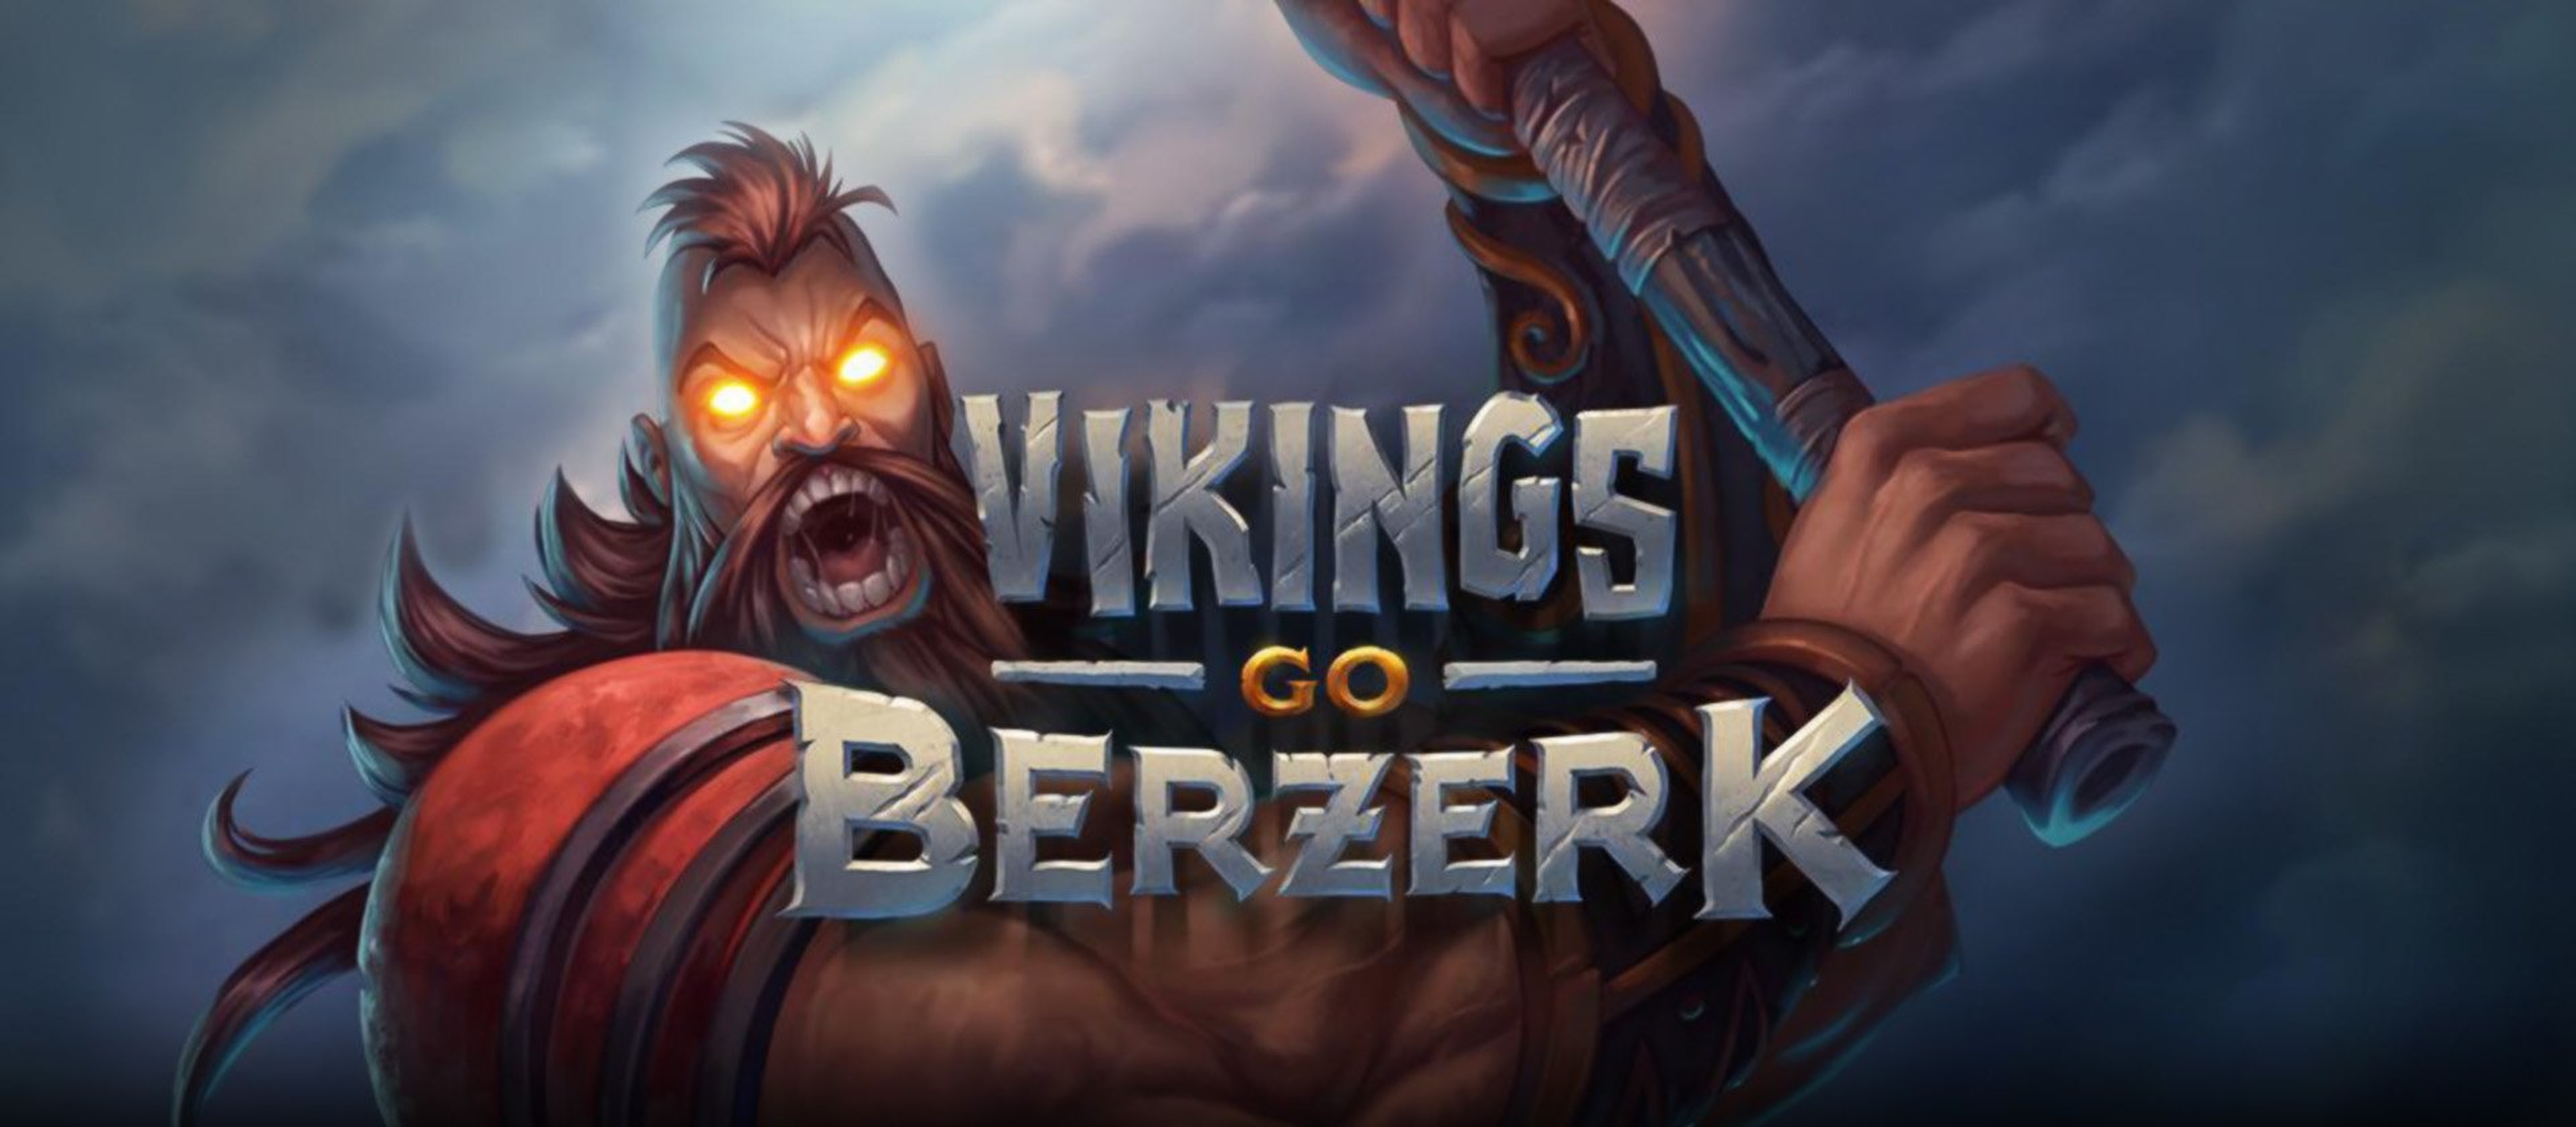 Vikings Go Berzerk demo